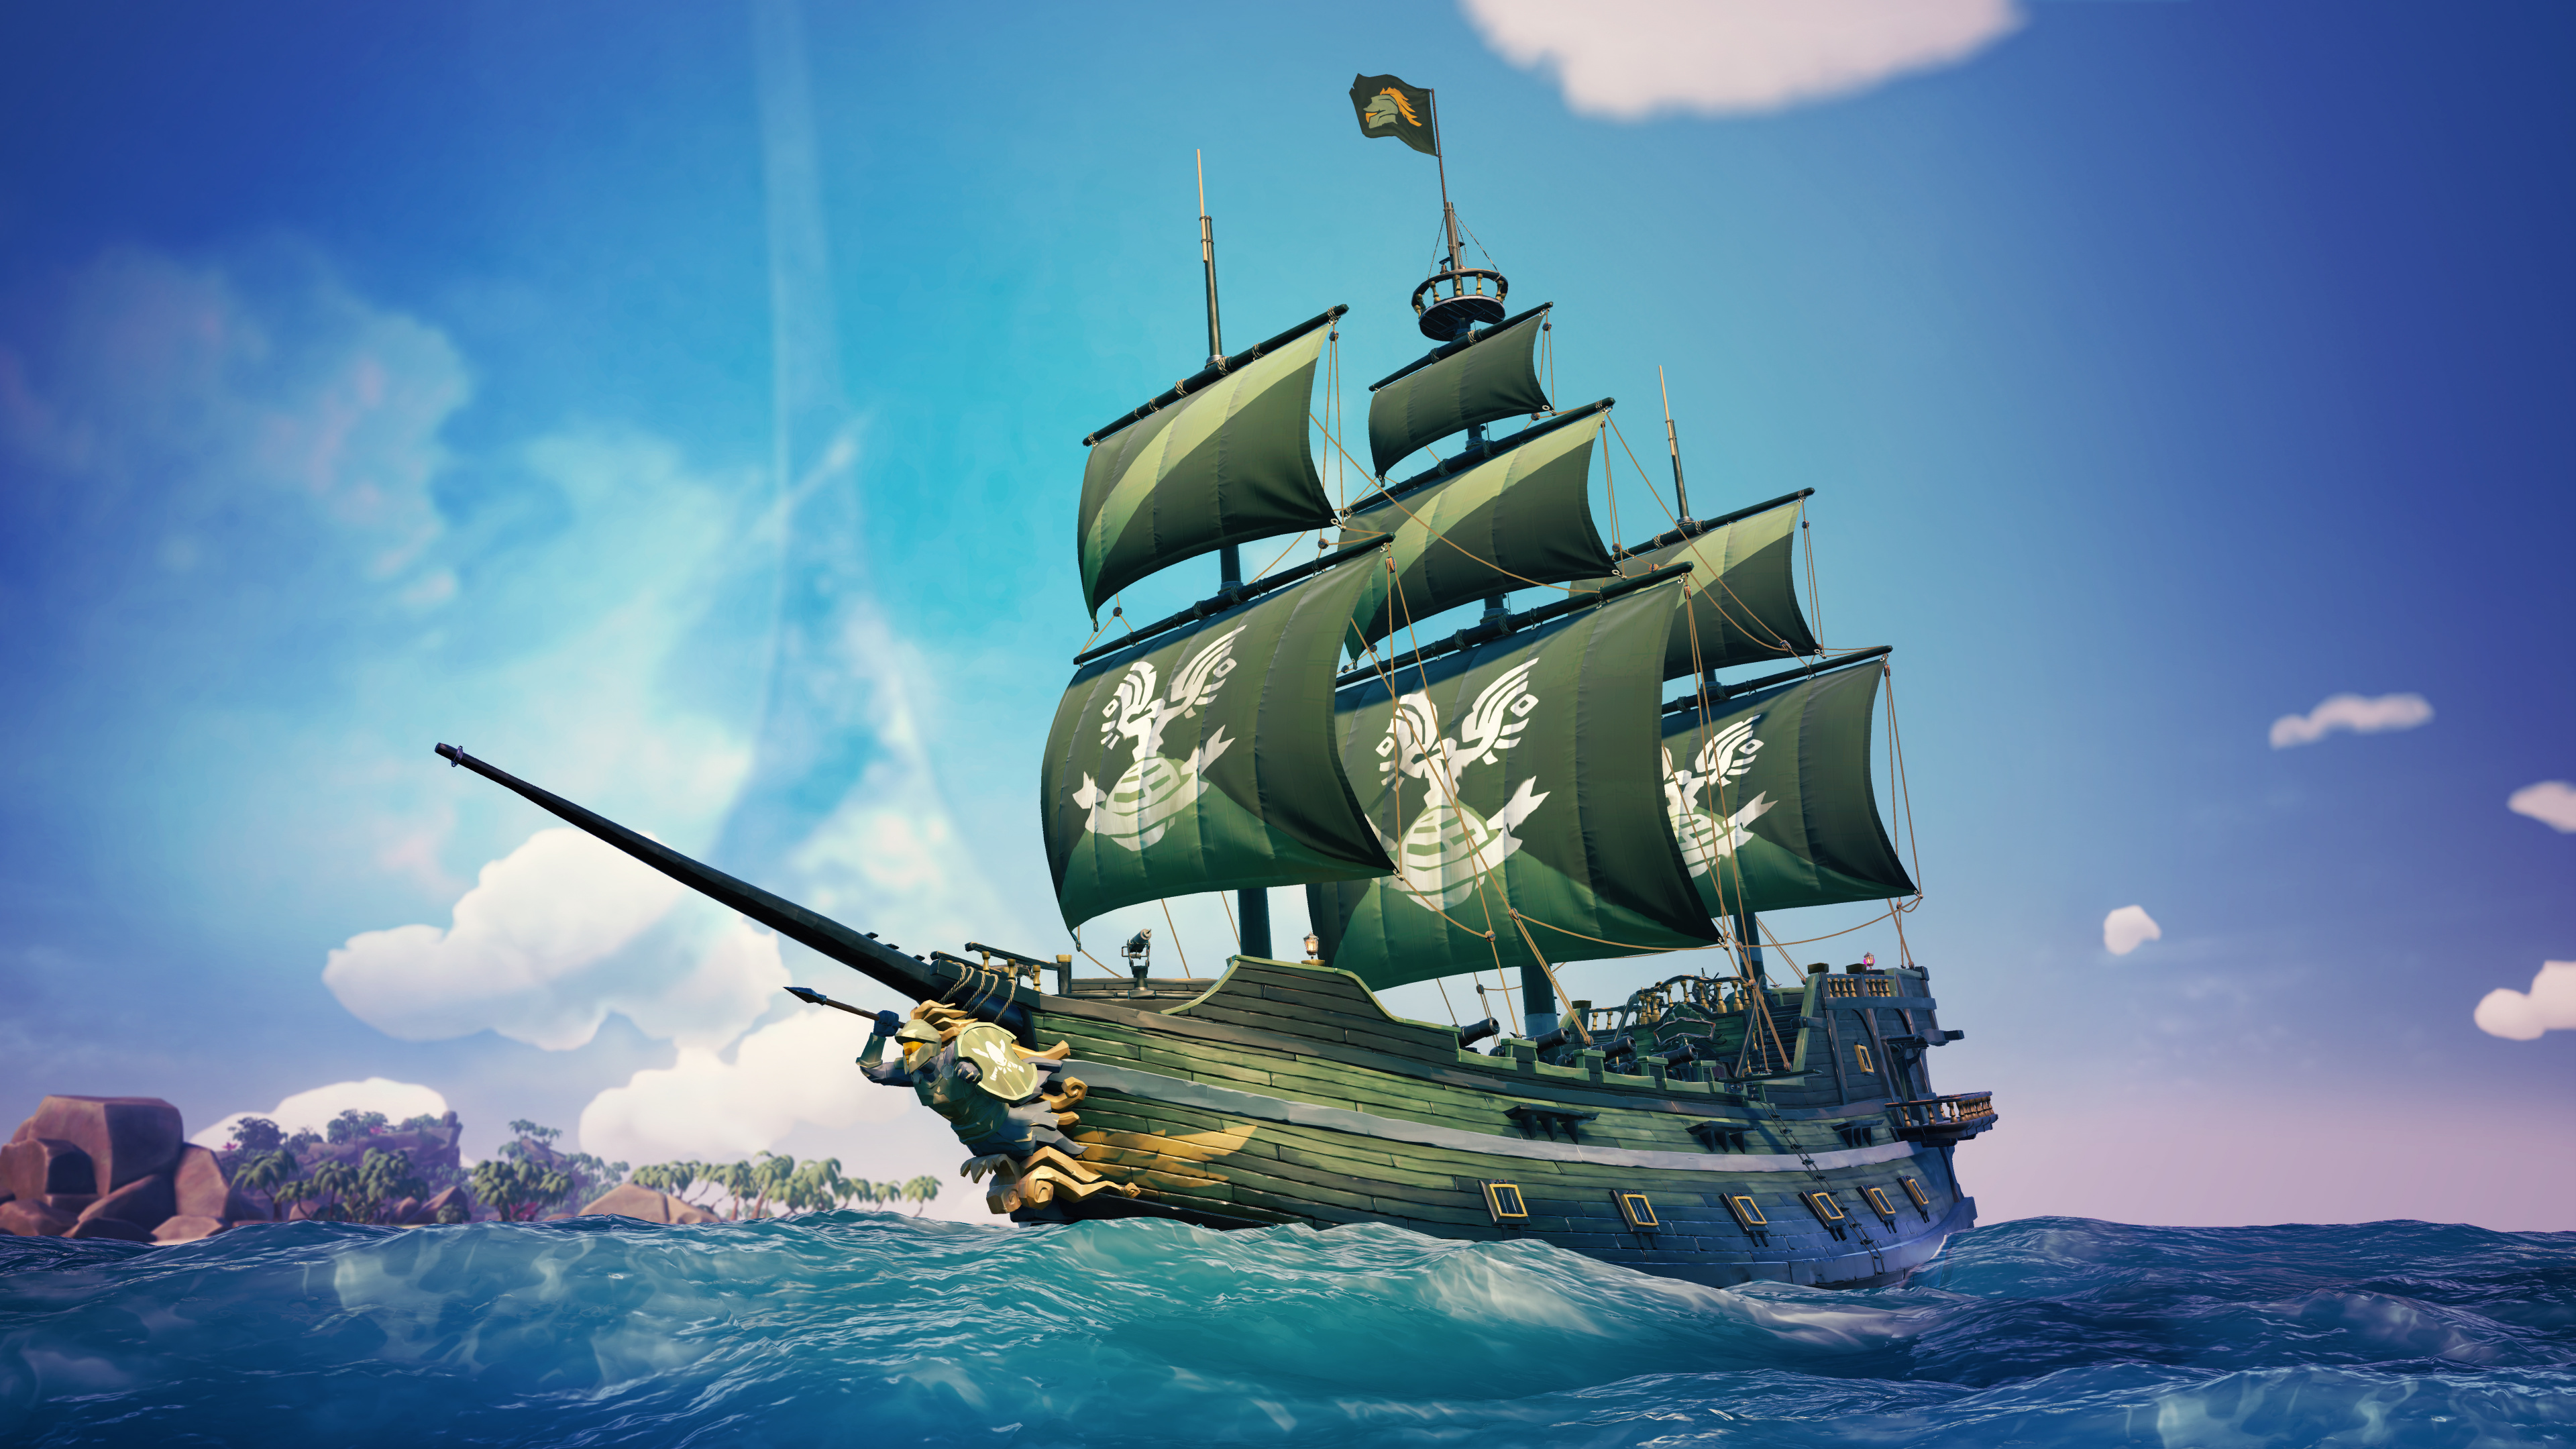 Xbox游戏室, 马尼拉大帆船, 船只, Fluyt, 旗舰 壁纸 3840x2160 允许